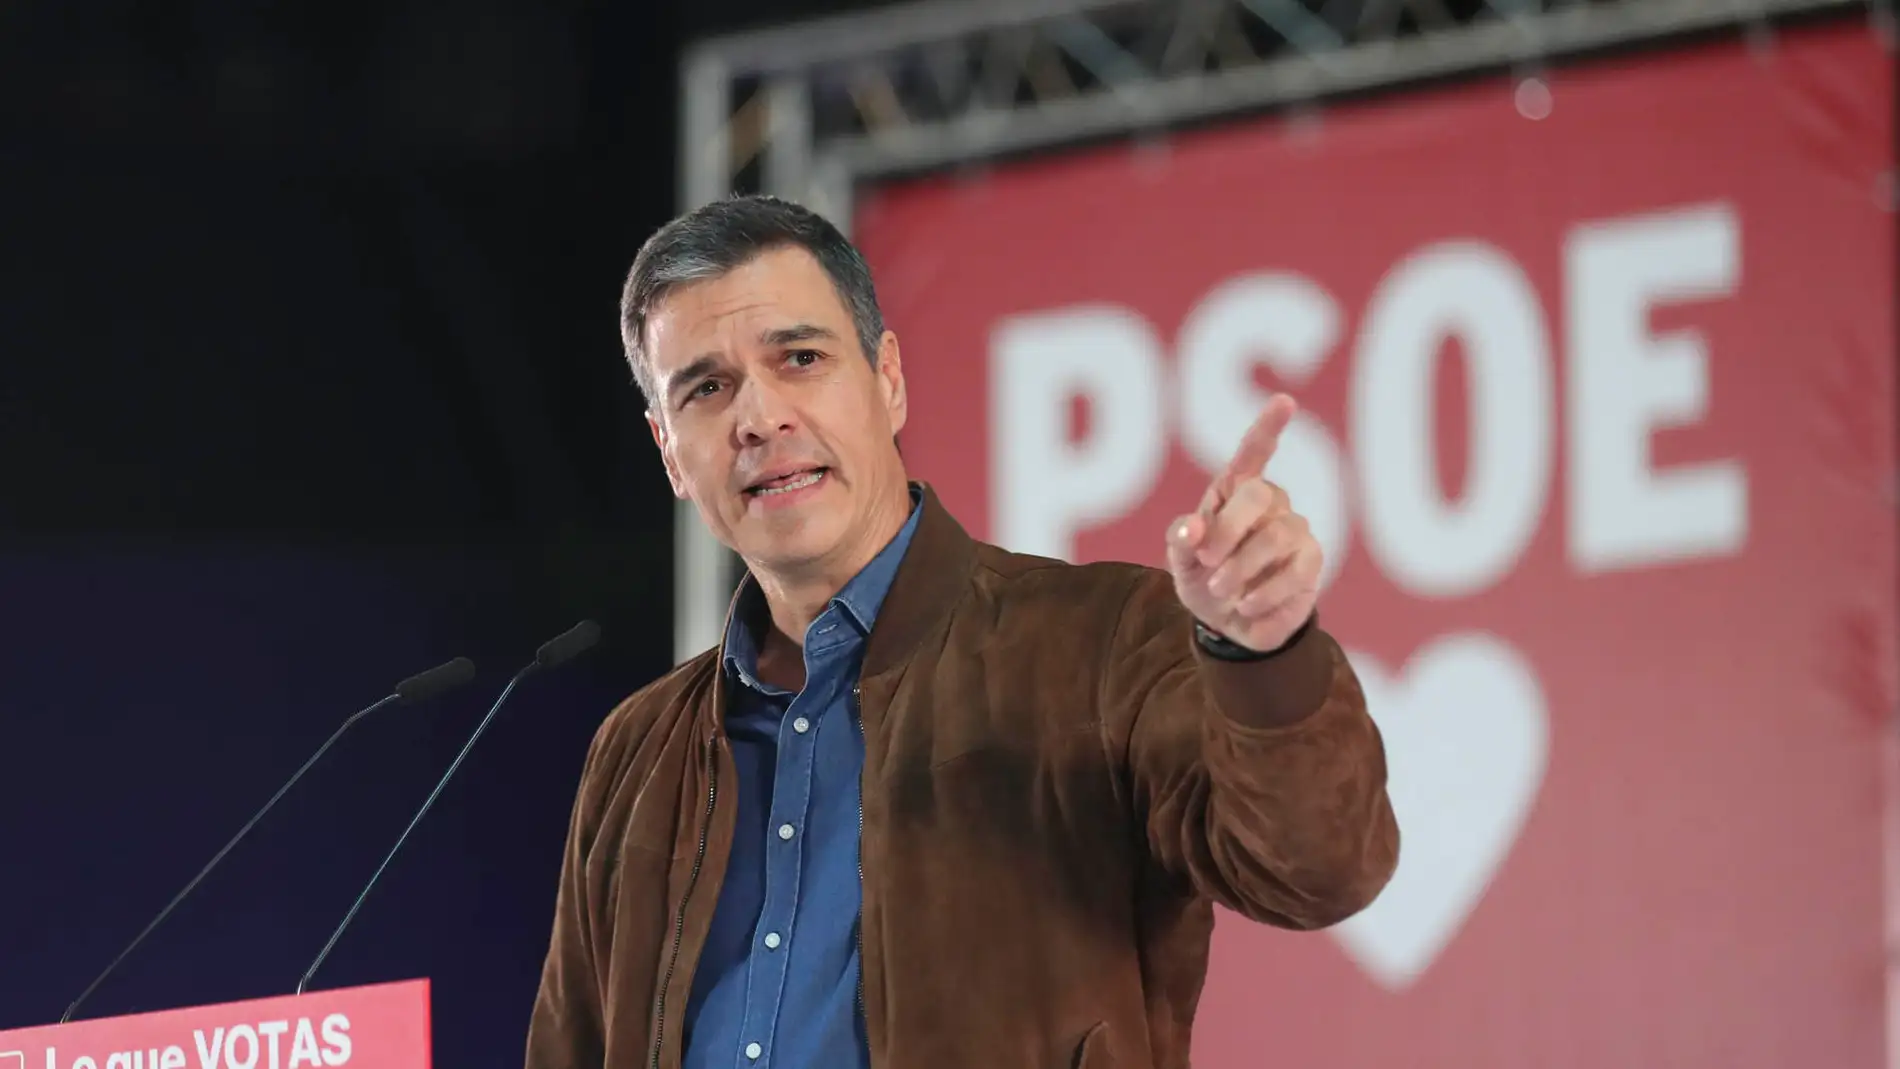 Pedro Sánchez durante un acto electoral